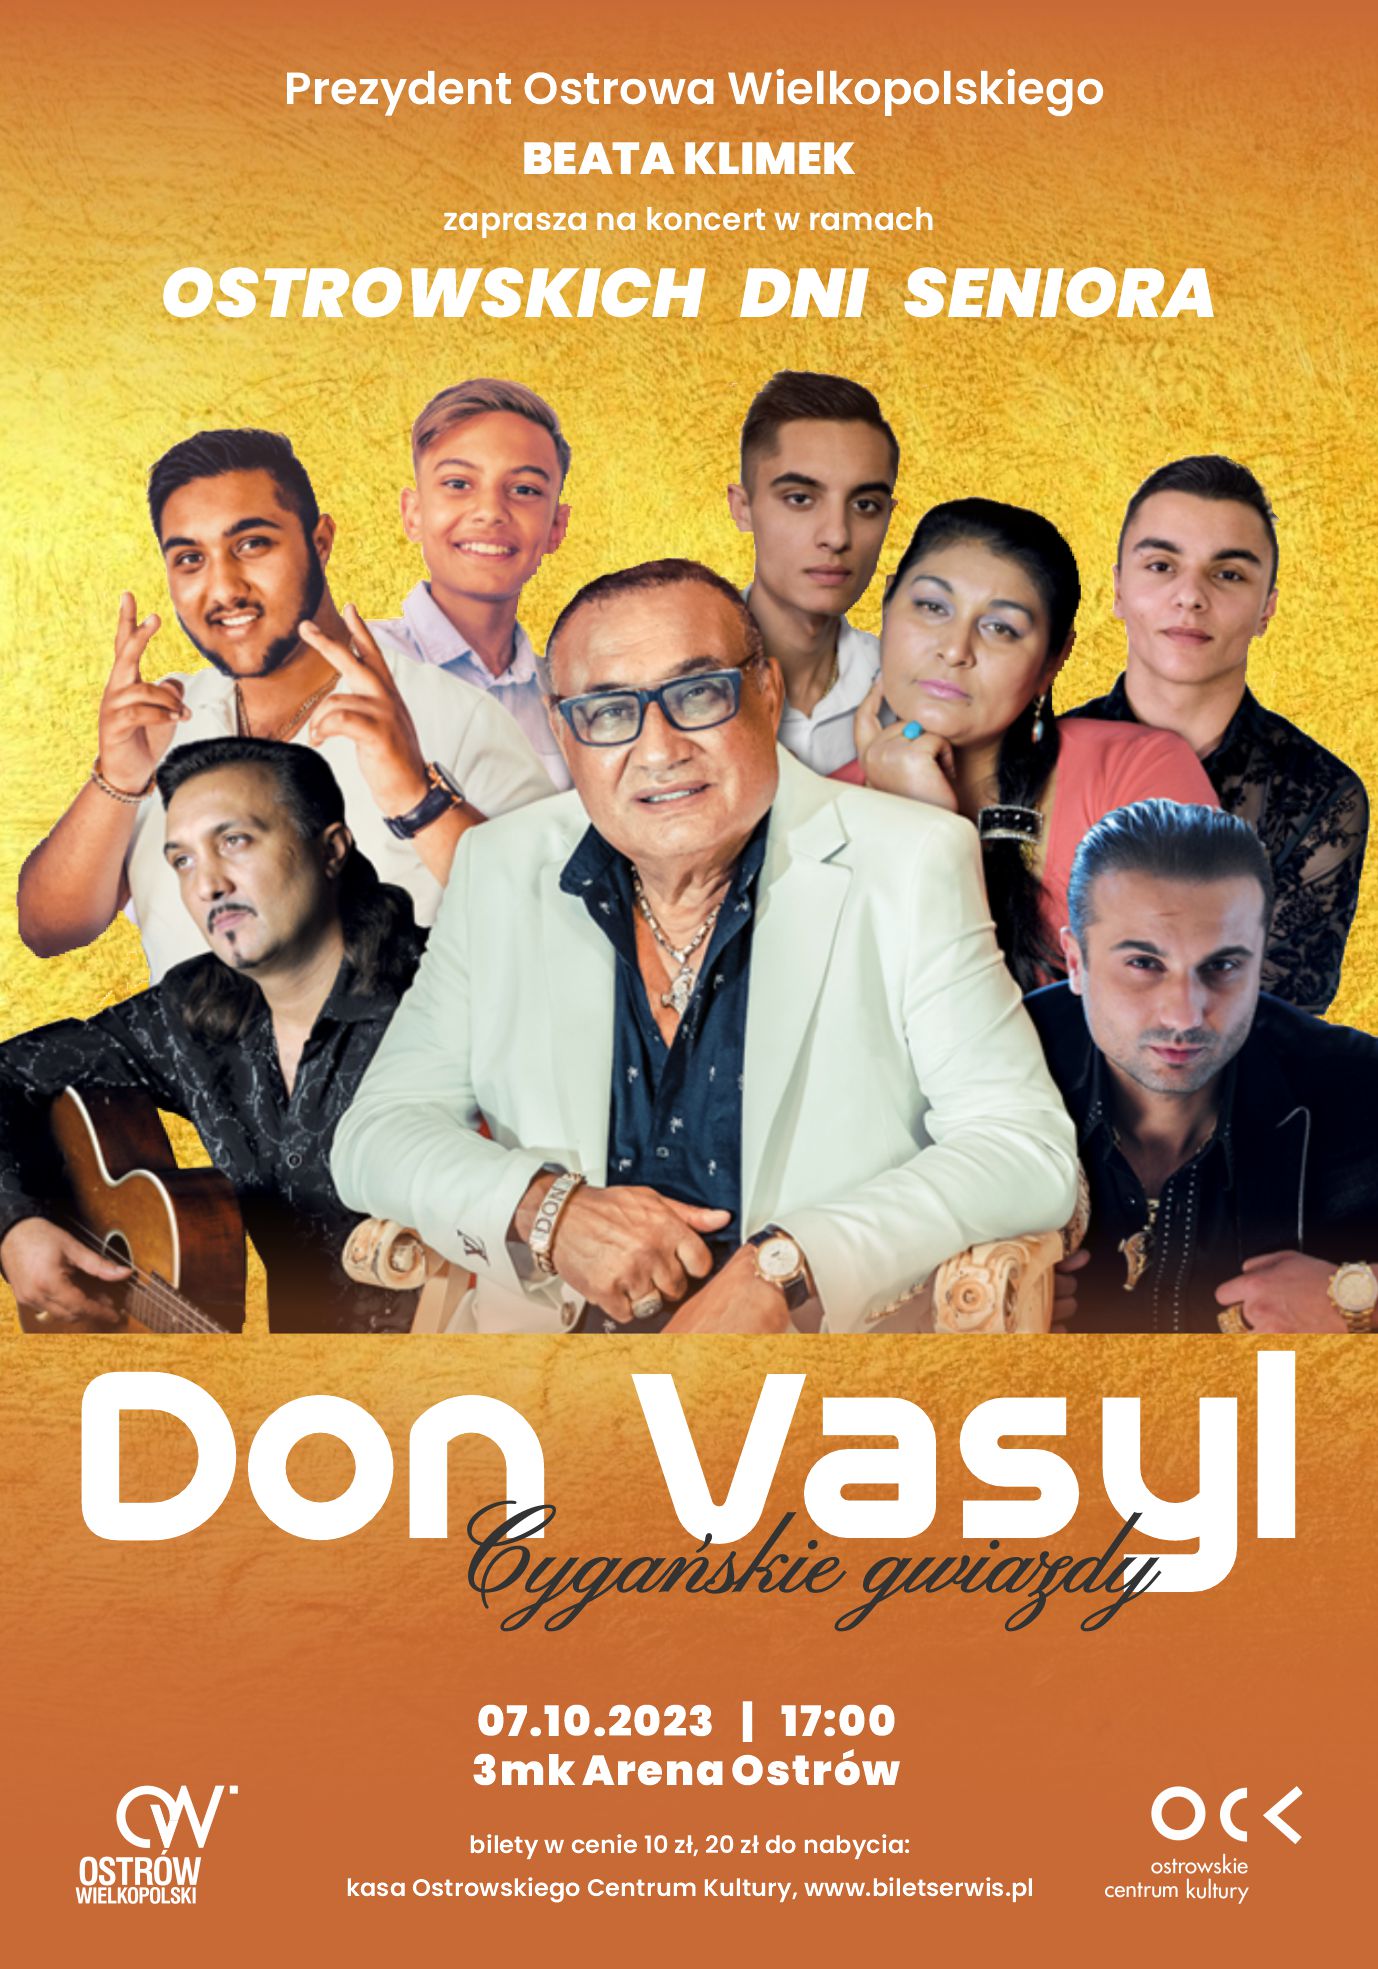 Plakat przedstawia zaproszenie na koncert Don Vasyl i Cygańskie gwiazdy. Plakat jest koloru żółtego, widoczne są na nim postacie - artyści muzyczni 